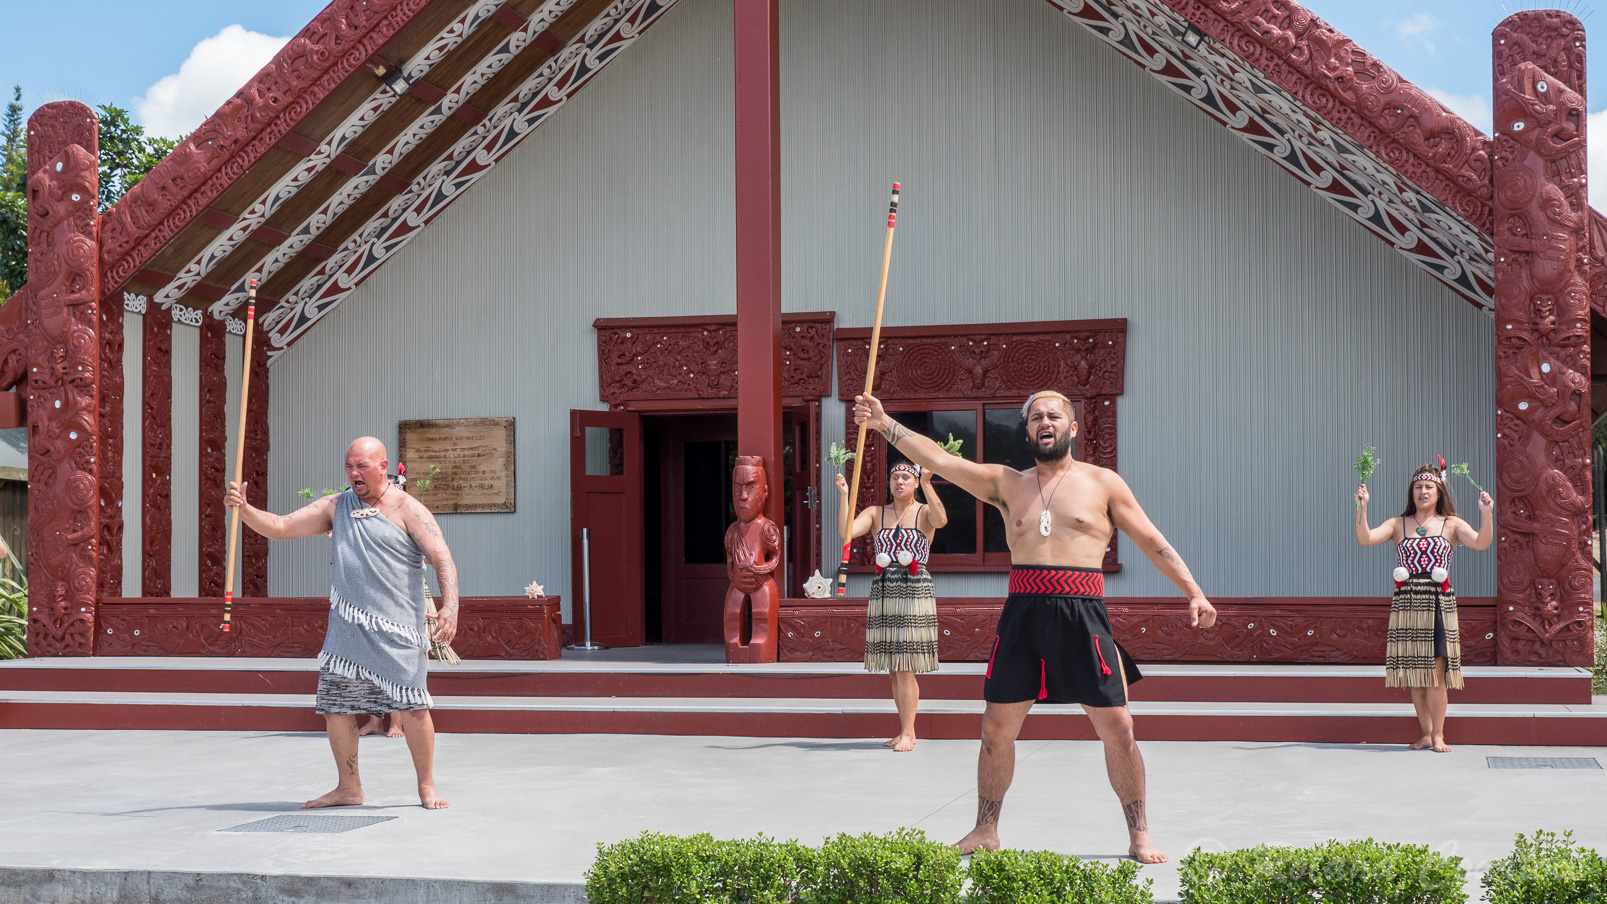 ...un spectacle maori témoigne de leur culture ....